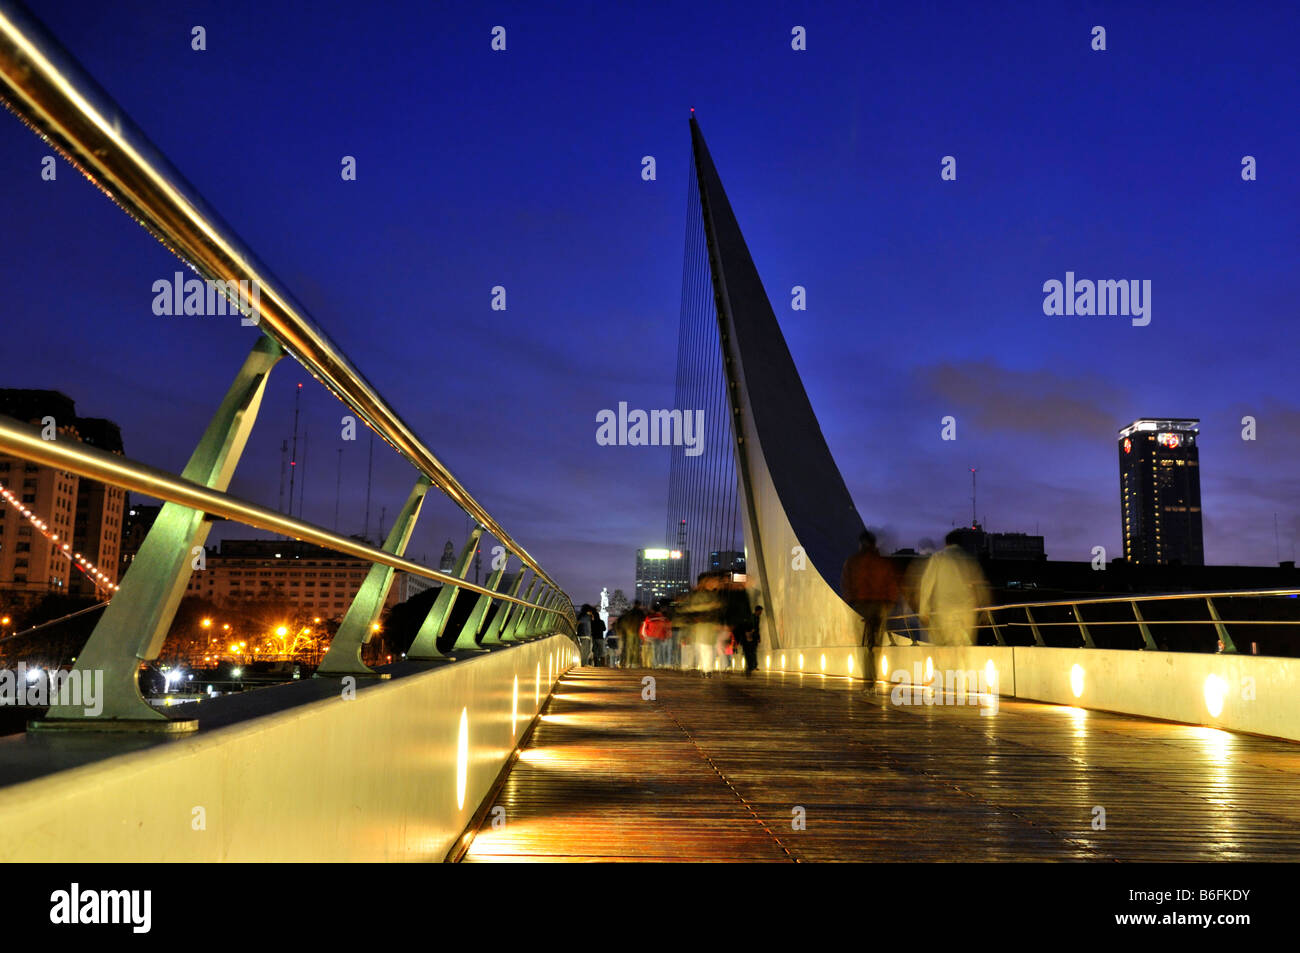 Puente De La Mujer, Frau Brücke, in der Nacht, befindet sich im alten Hafen Puerto Madero, Buenos Aires, Argentinien, Südamerika Stockfoto